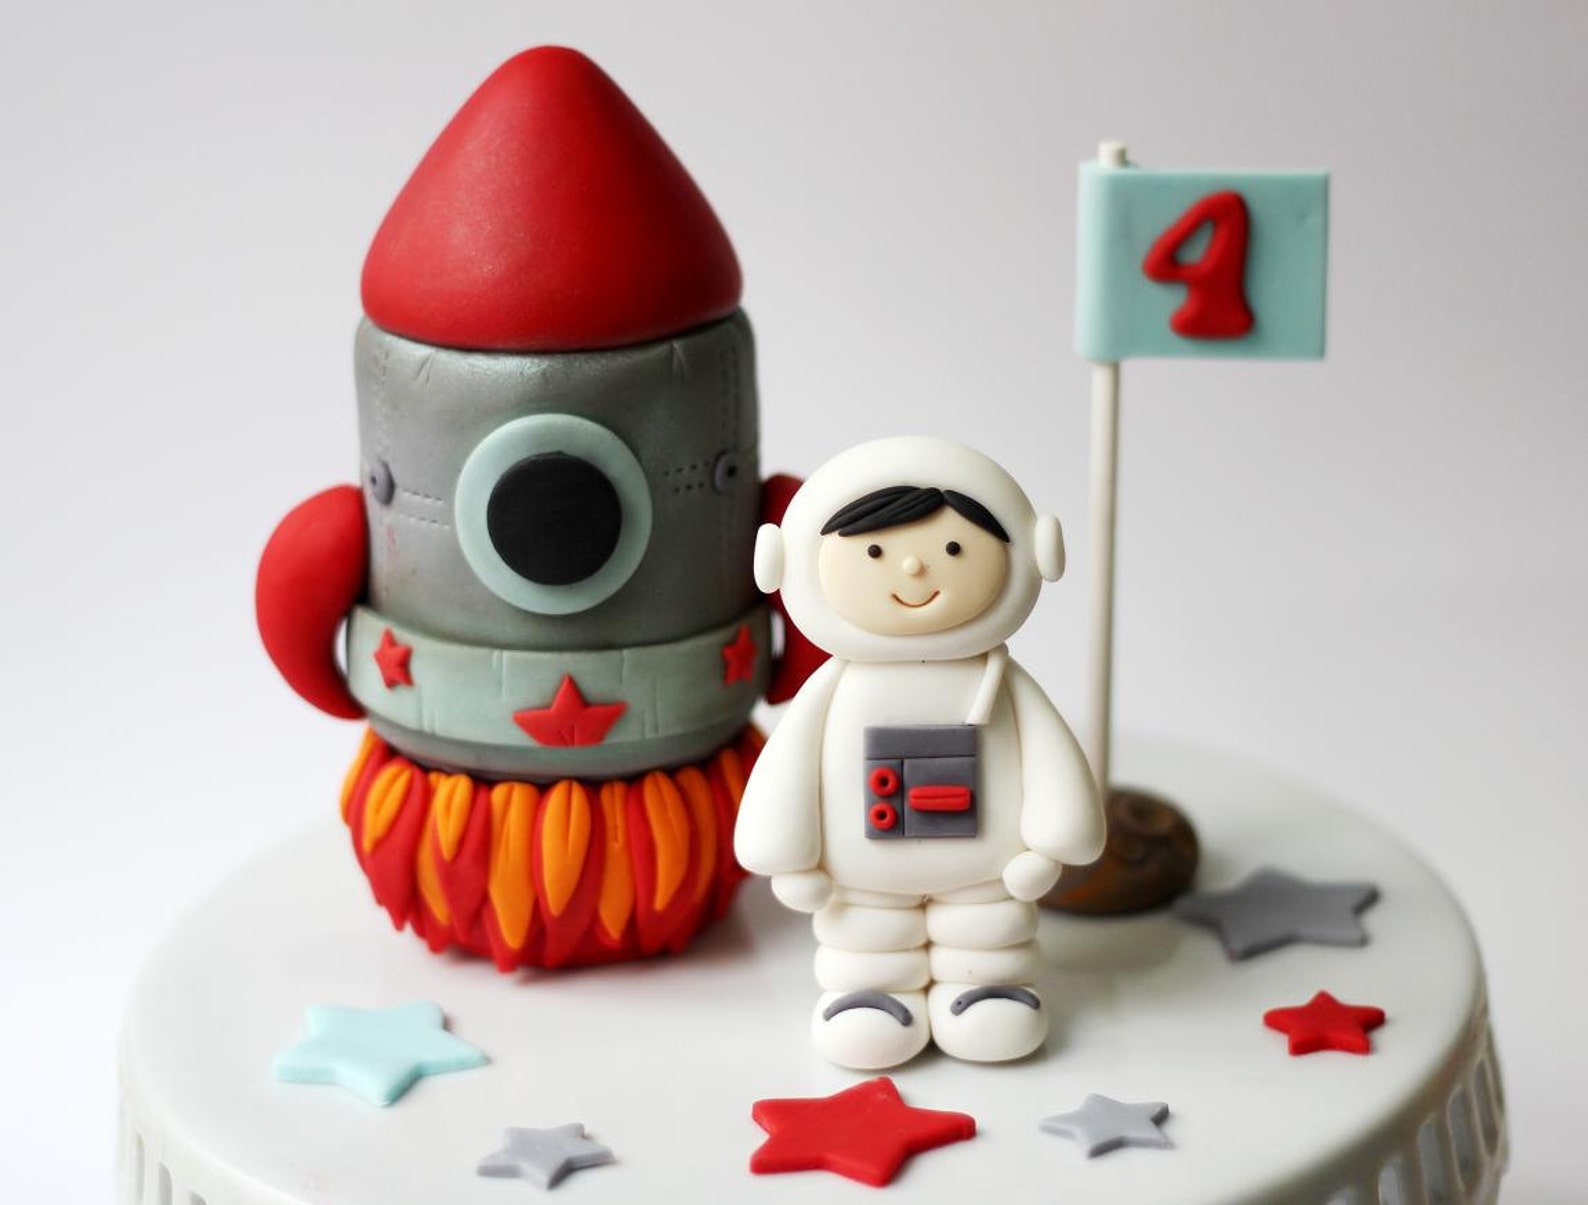 Торт с космонавтом